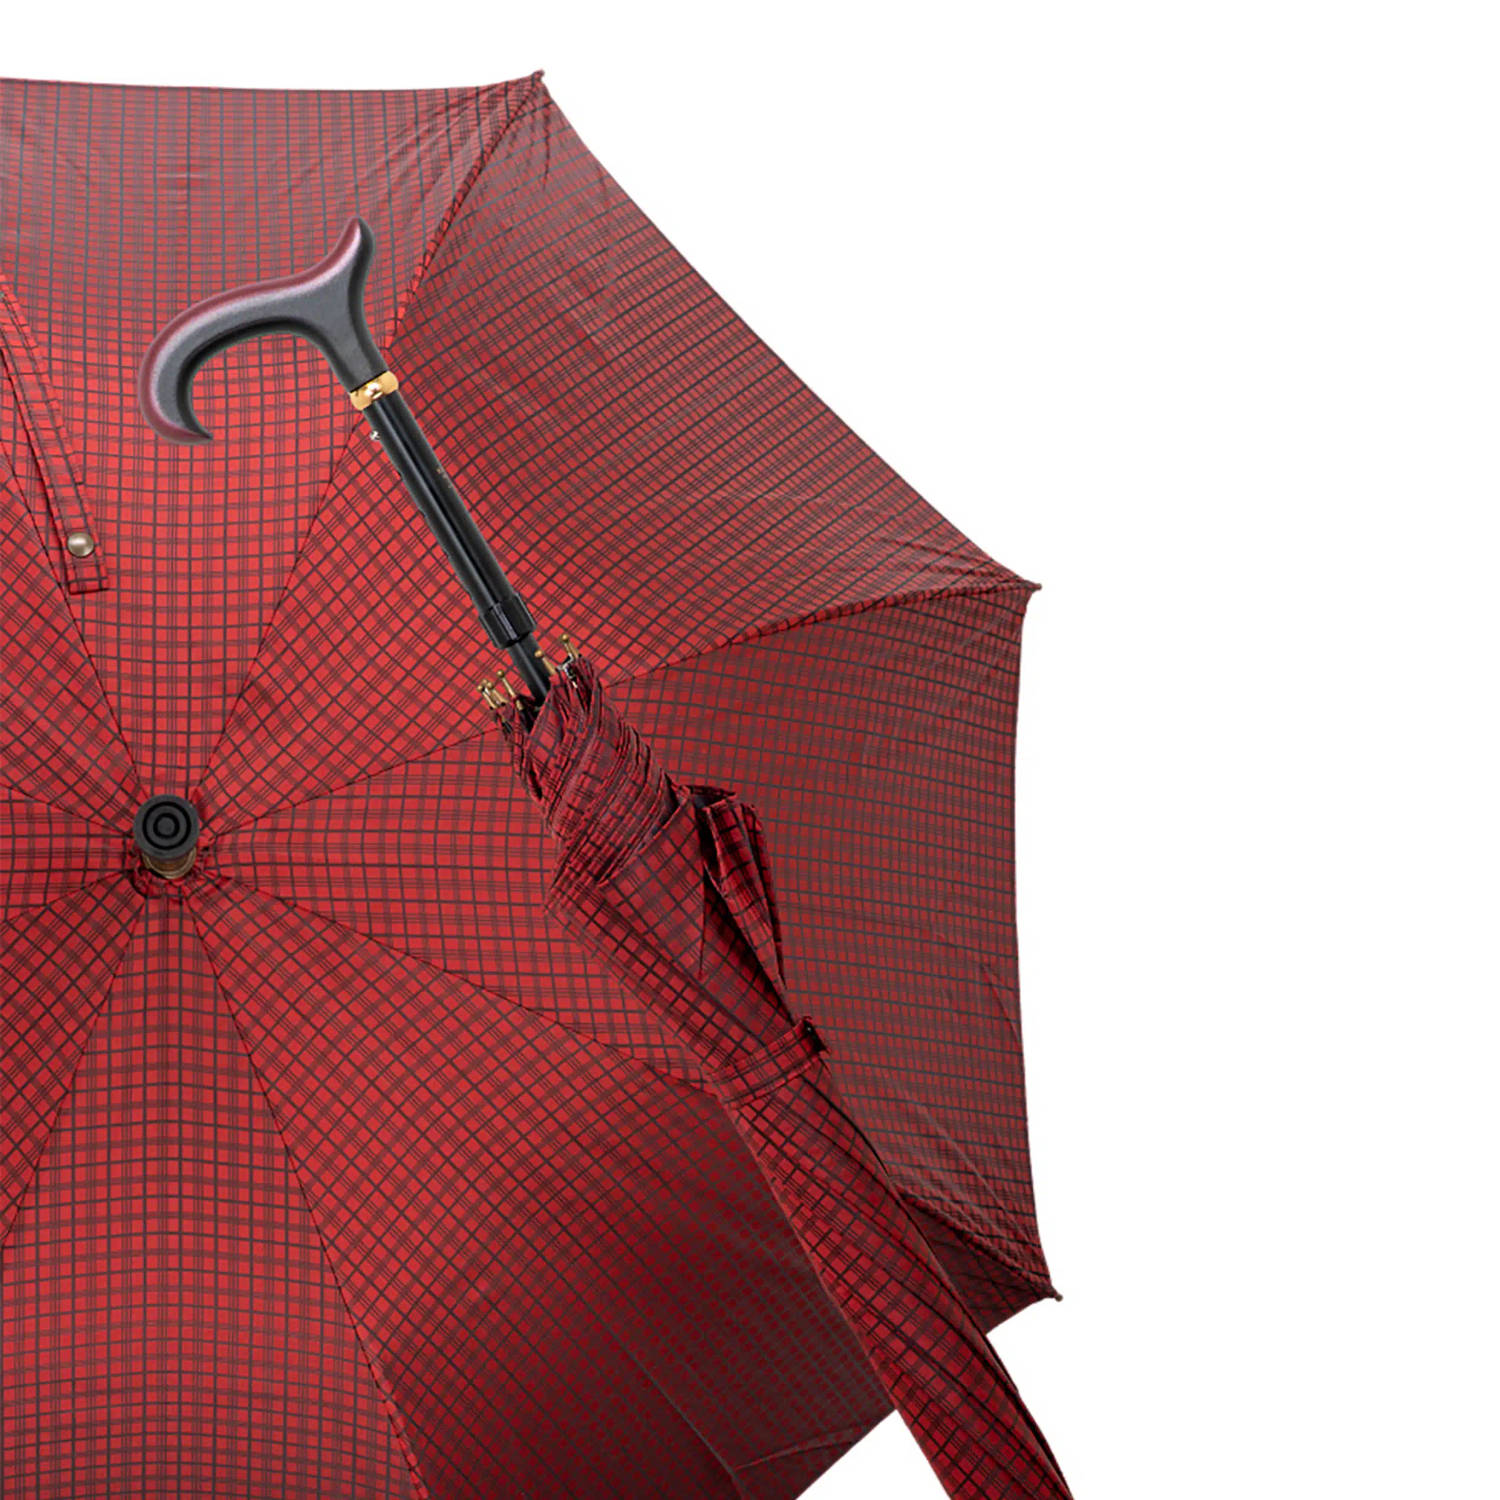 Gastrock Verstelbare paraplu wandelstok - Italiaanse satijn stof - Rood - Luxe wandelstok paraplu - Verstelbaar van 90 tot 98 cm - Doorsnede doek 90 cm - Aluminium frame - Derby ha